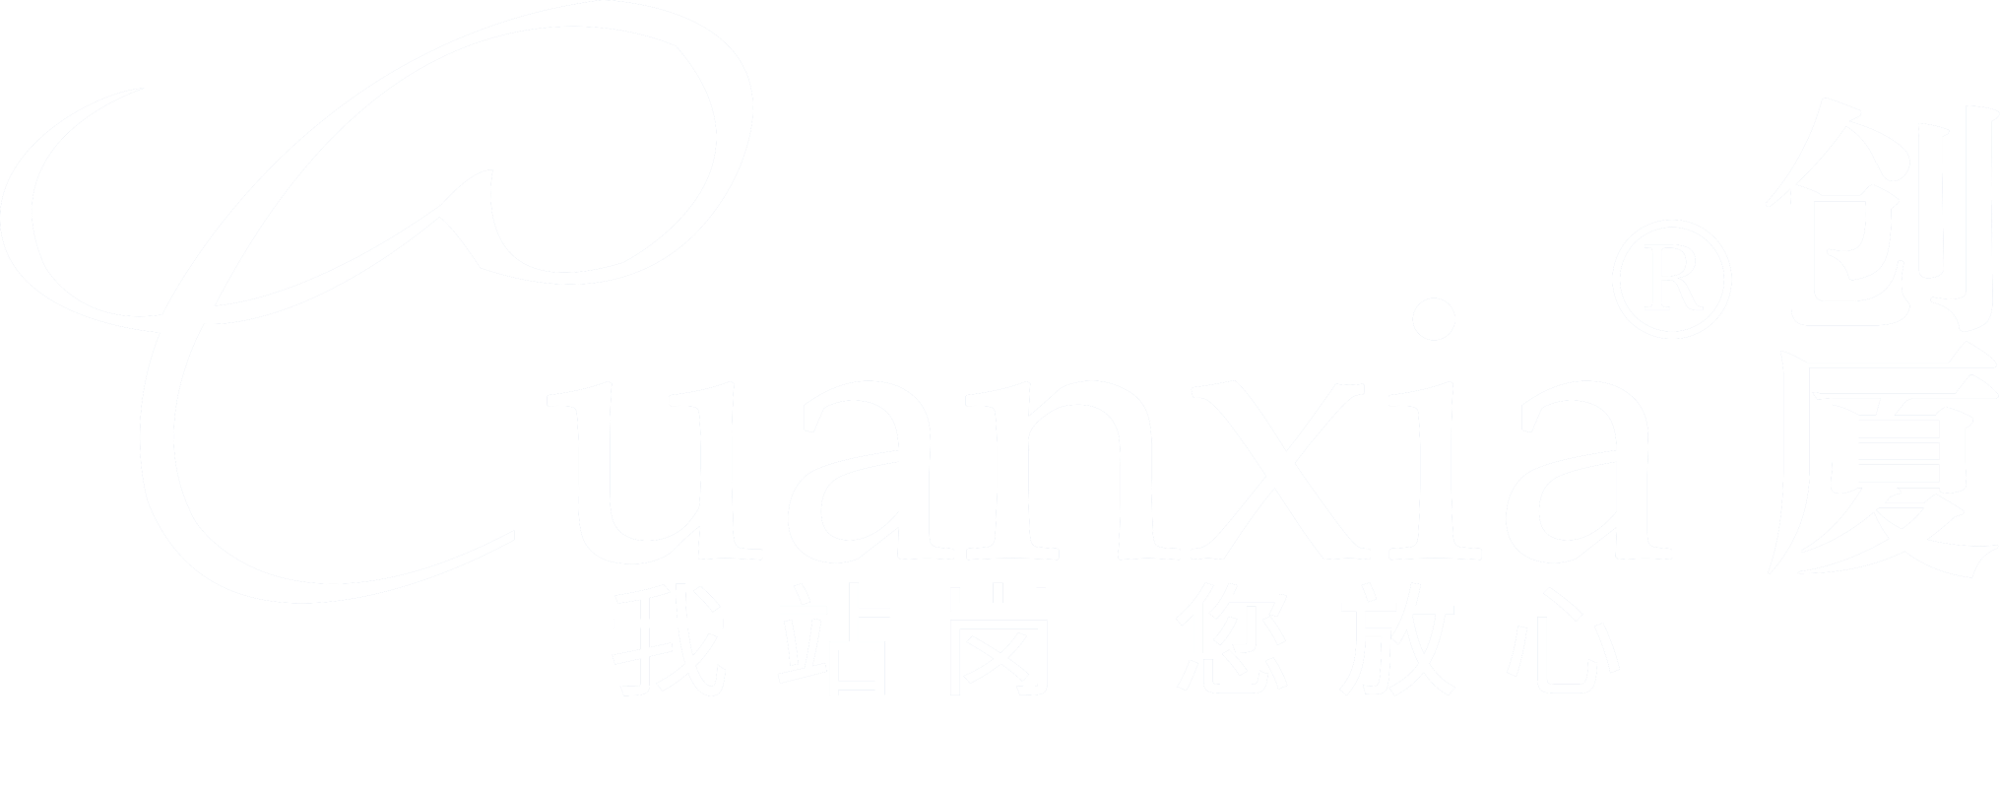 chuang廈科技